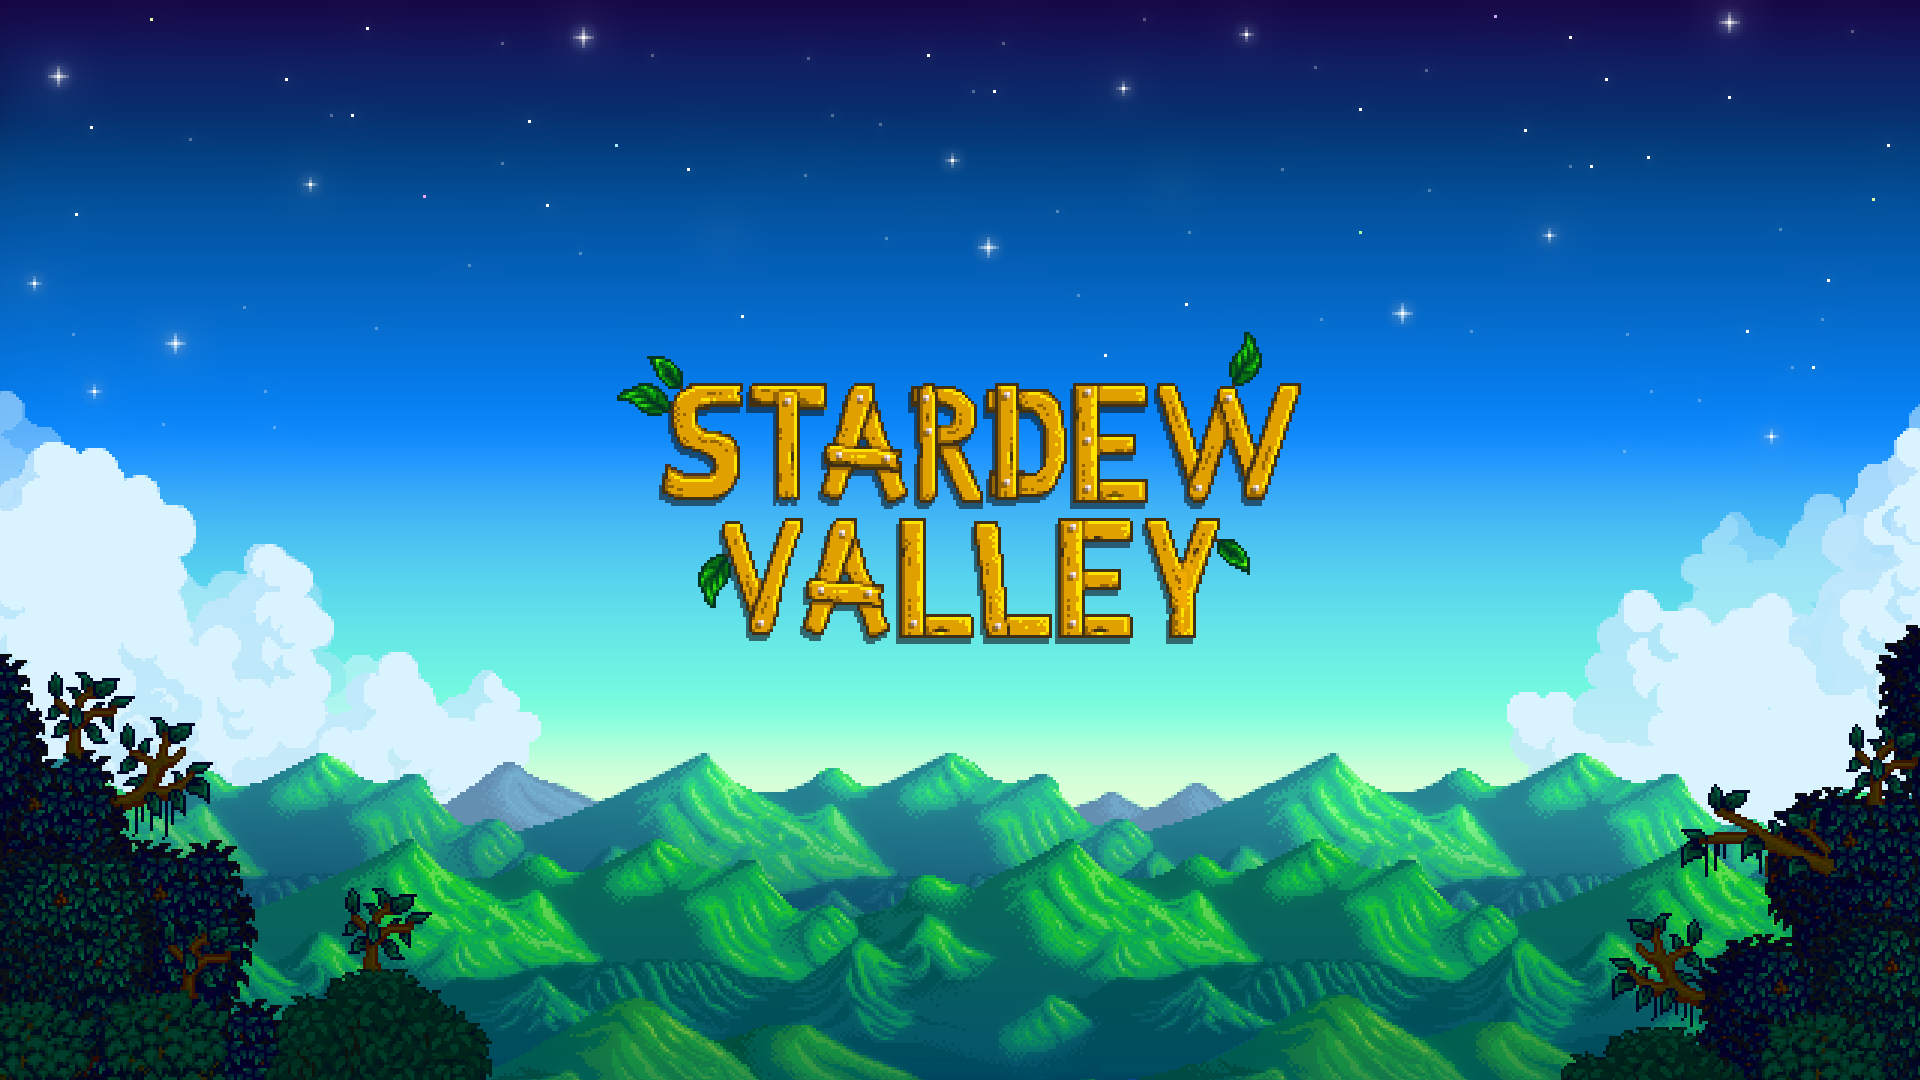 Stardew Valley 5th-anniversary latest update